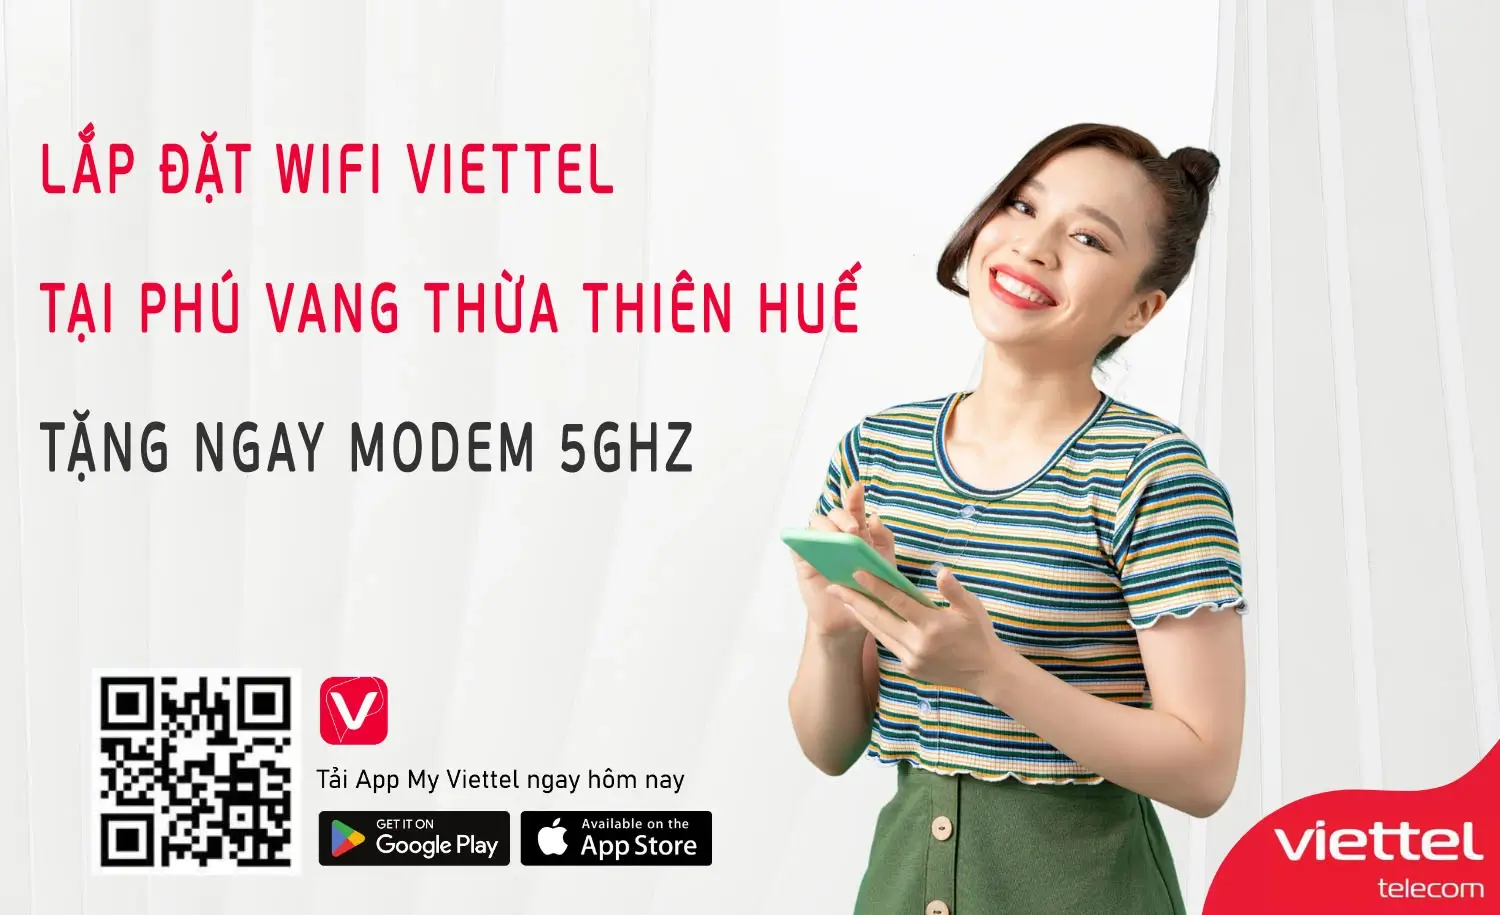 Lắp đặt wifi Viettel tại Phú Vang Thừa Thiên Huế Tặng Ngay Modem 5GHz